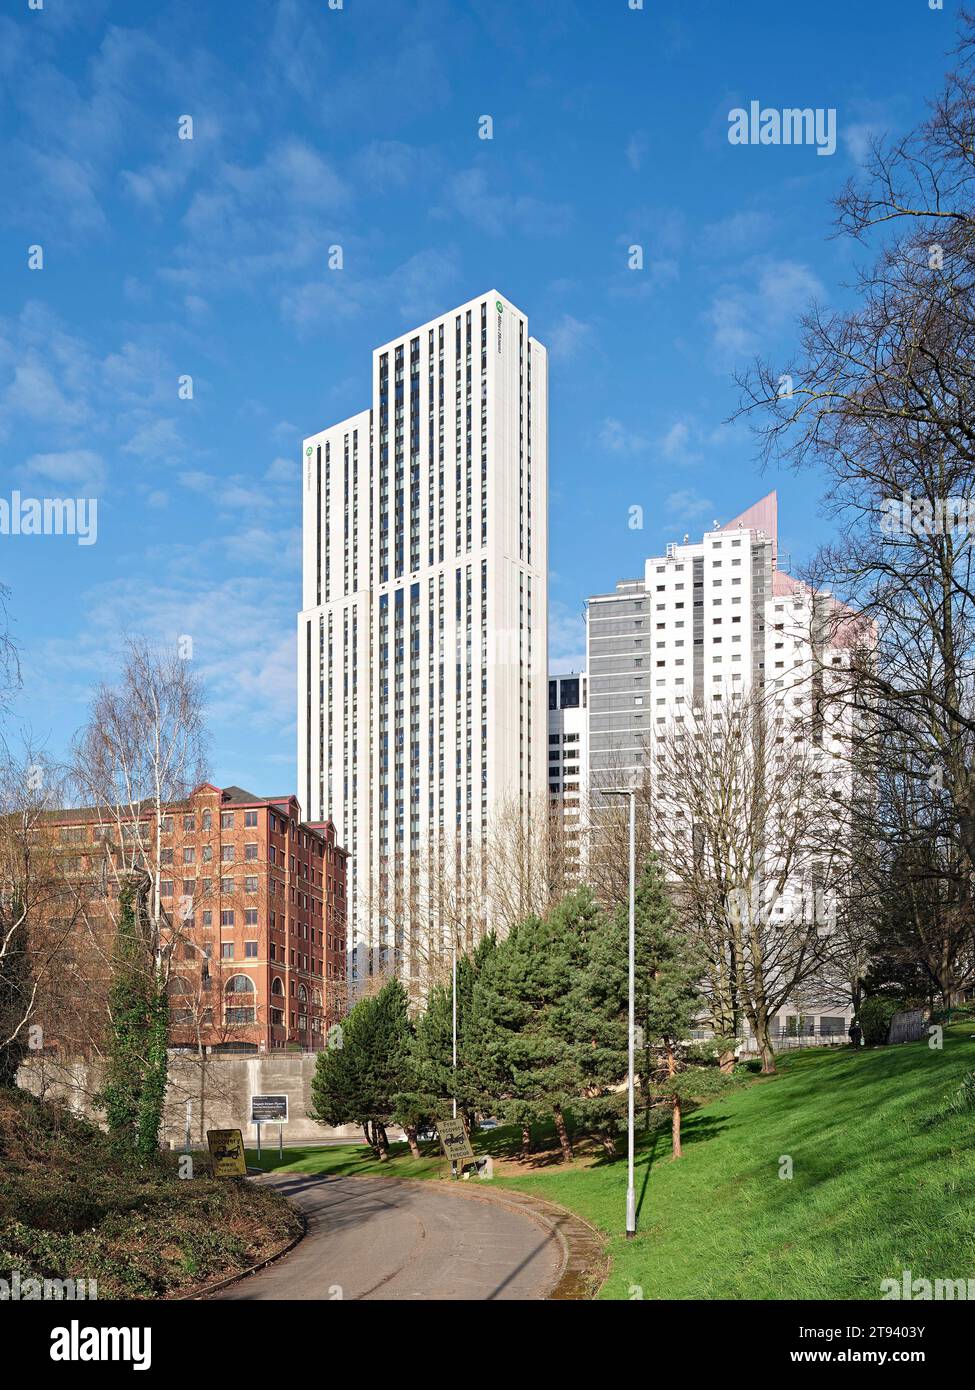 Gratte-ciel vu du vert voisin. Altus House, Leeds, Royaume-Uni. Architecte : O'Connell East Architects, 2022. Banque D'Images